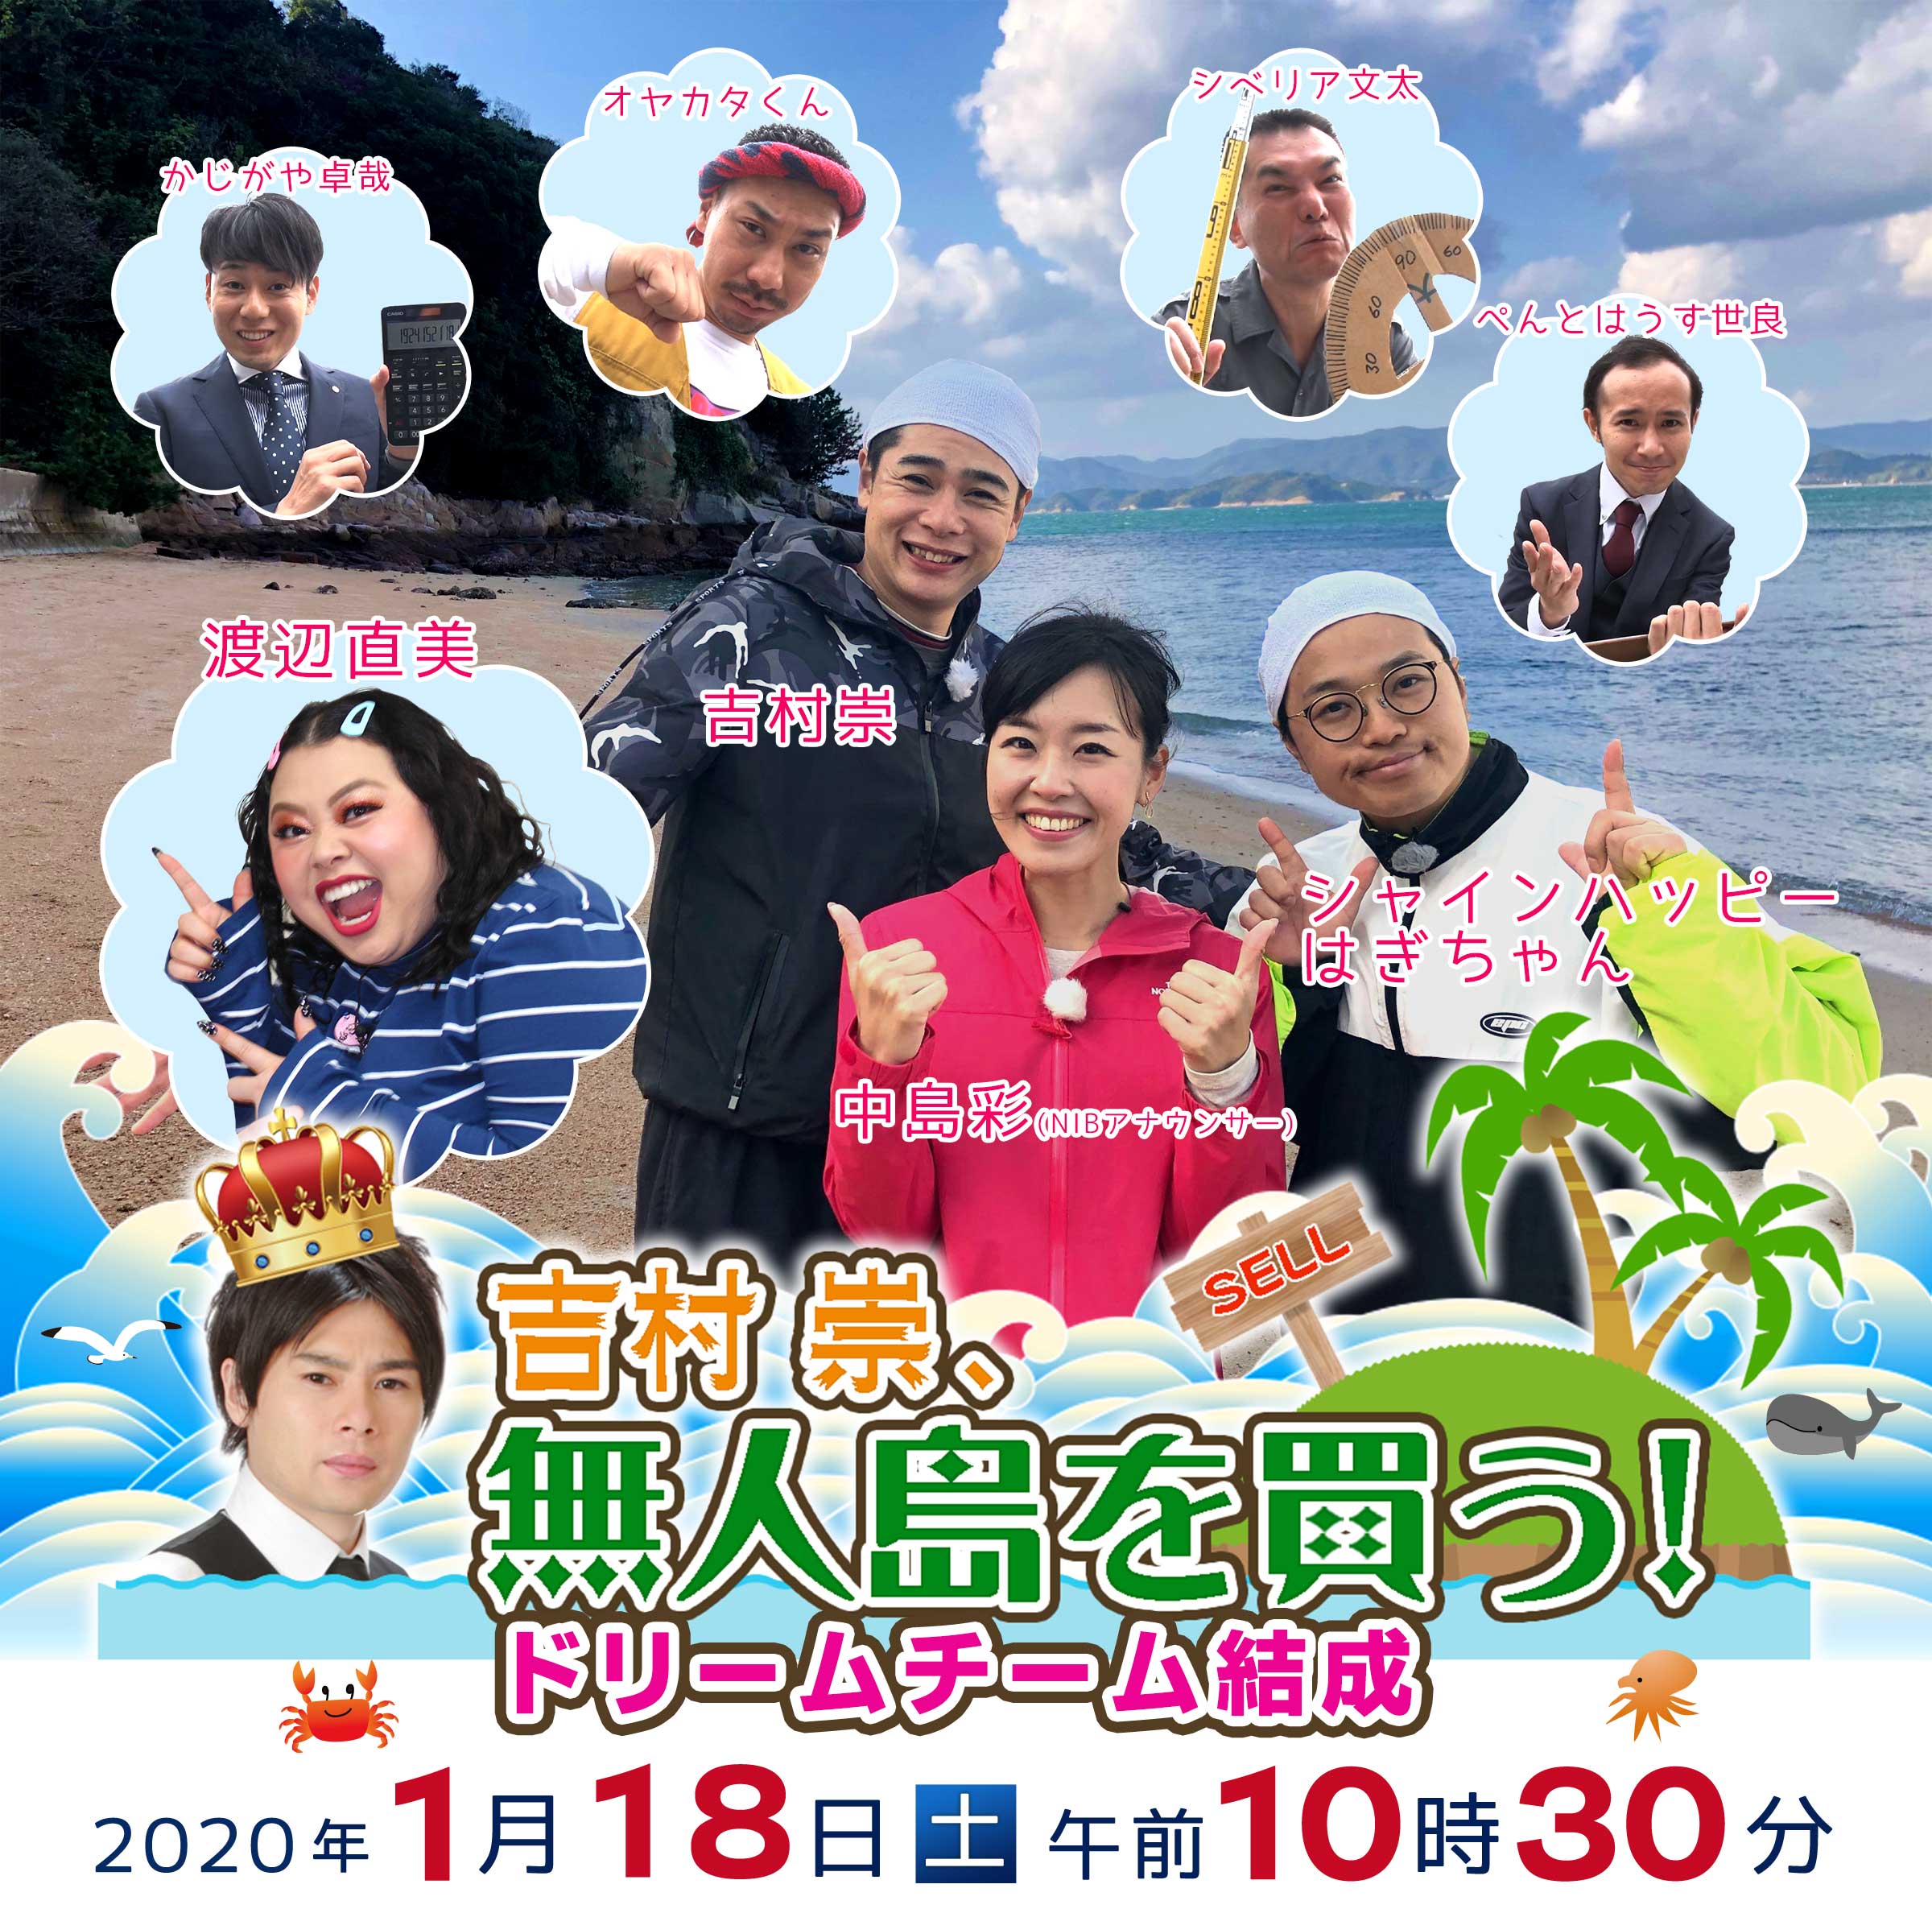 「吉村崇　無人島を買う!
ドリームチーム結成」2020年1月18日(土) 午前10時30分～11時25分